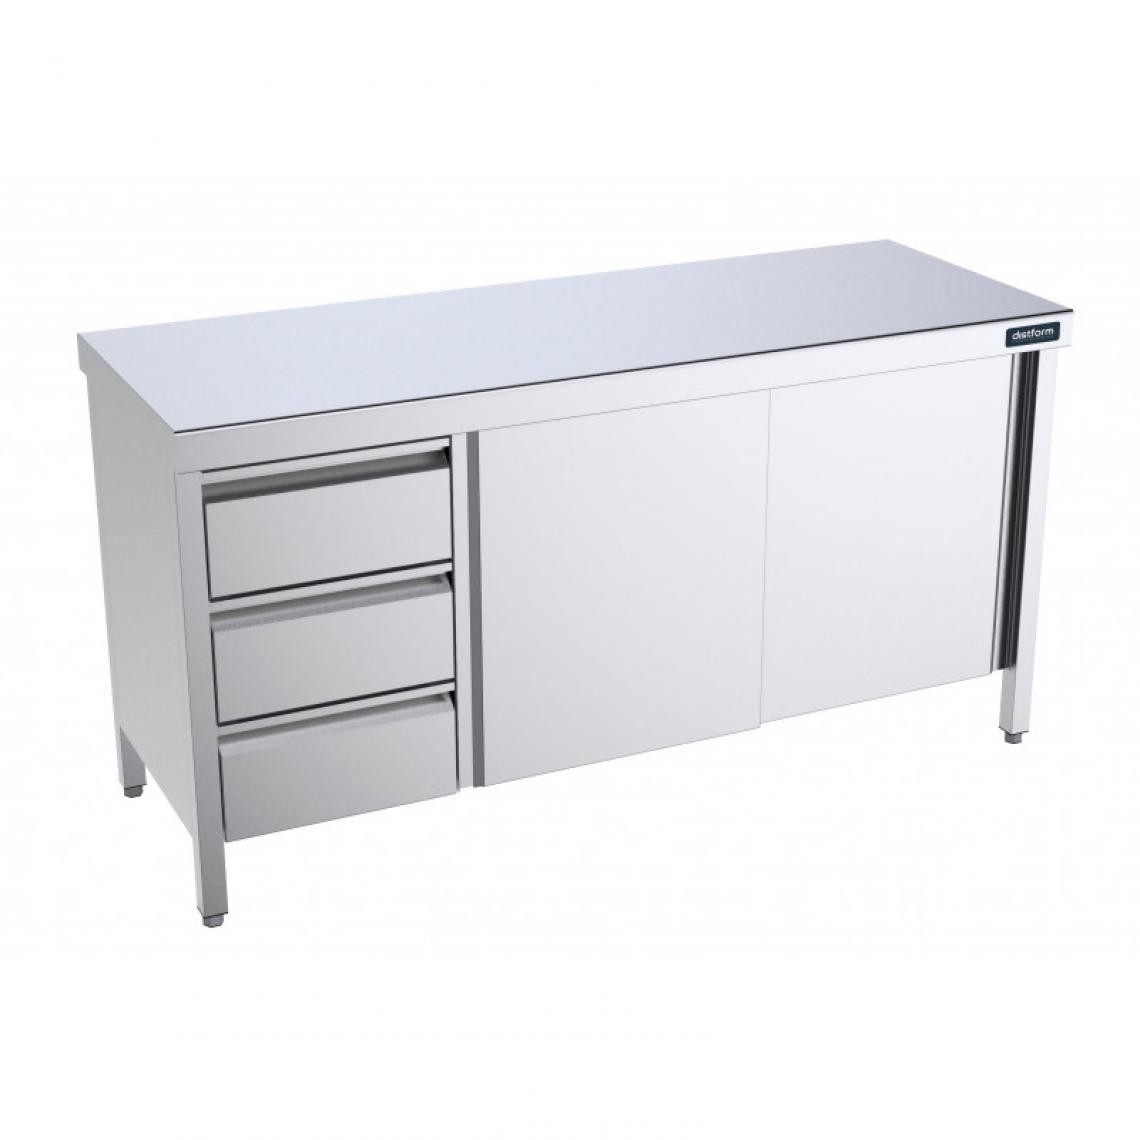 DISTFORM - Table Inox centrale avec portes coulissantes et tiroirs à gauche - Gamme 600 - Distform - Acier inoxydable2200x600 - Tables à manger